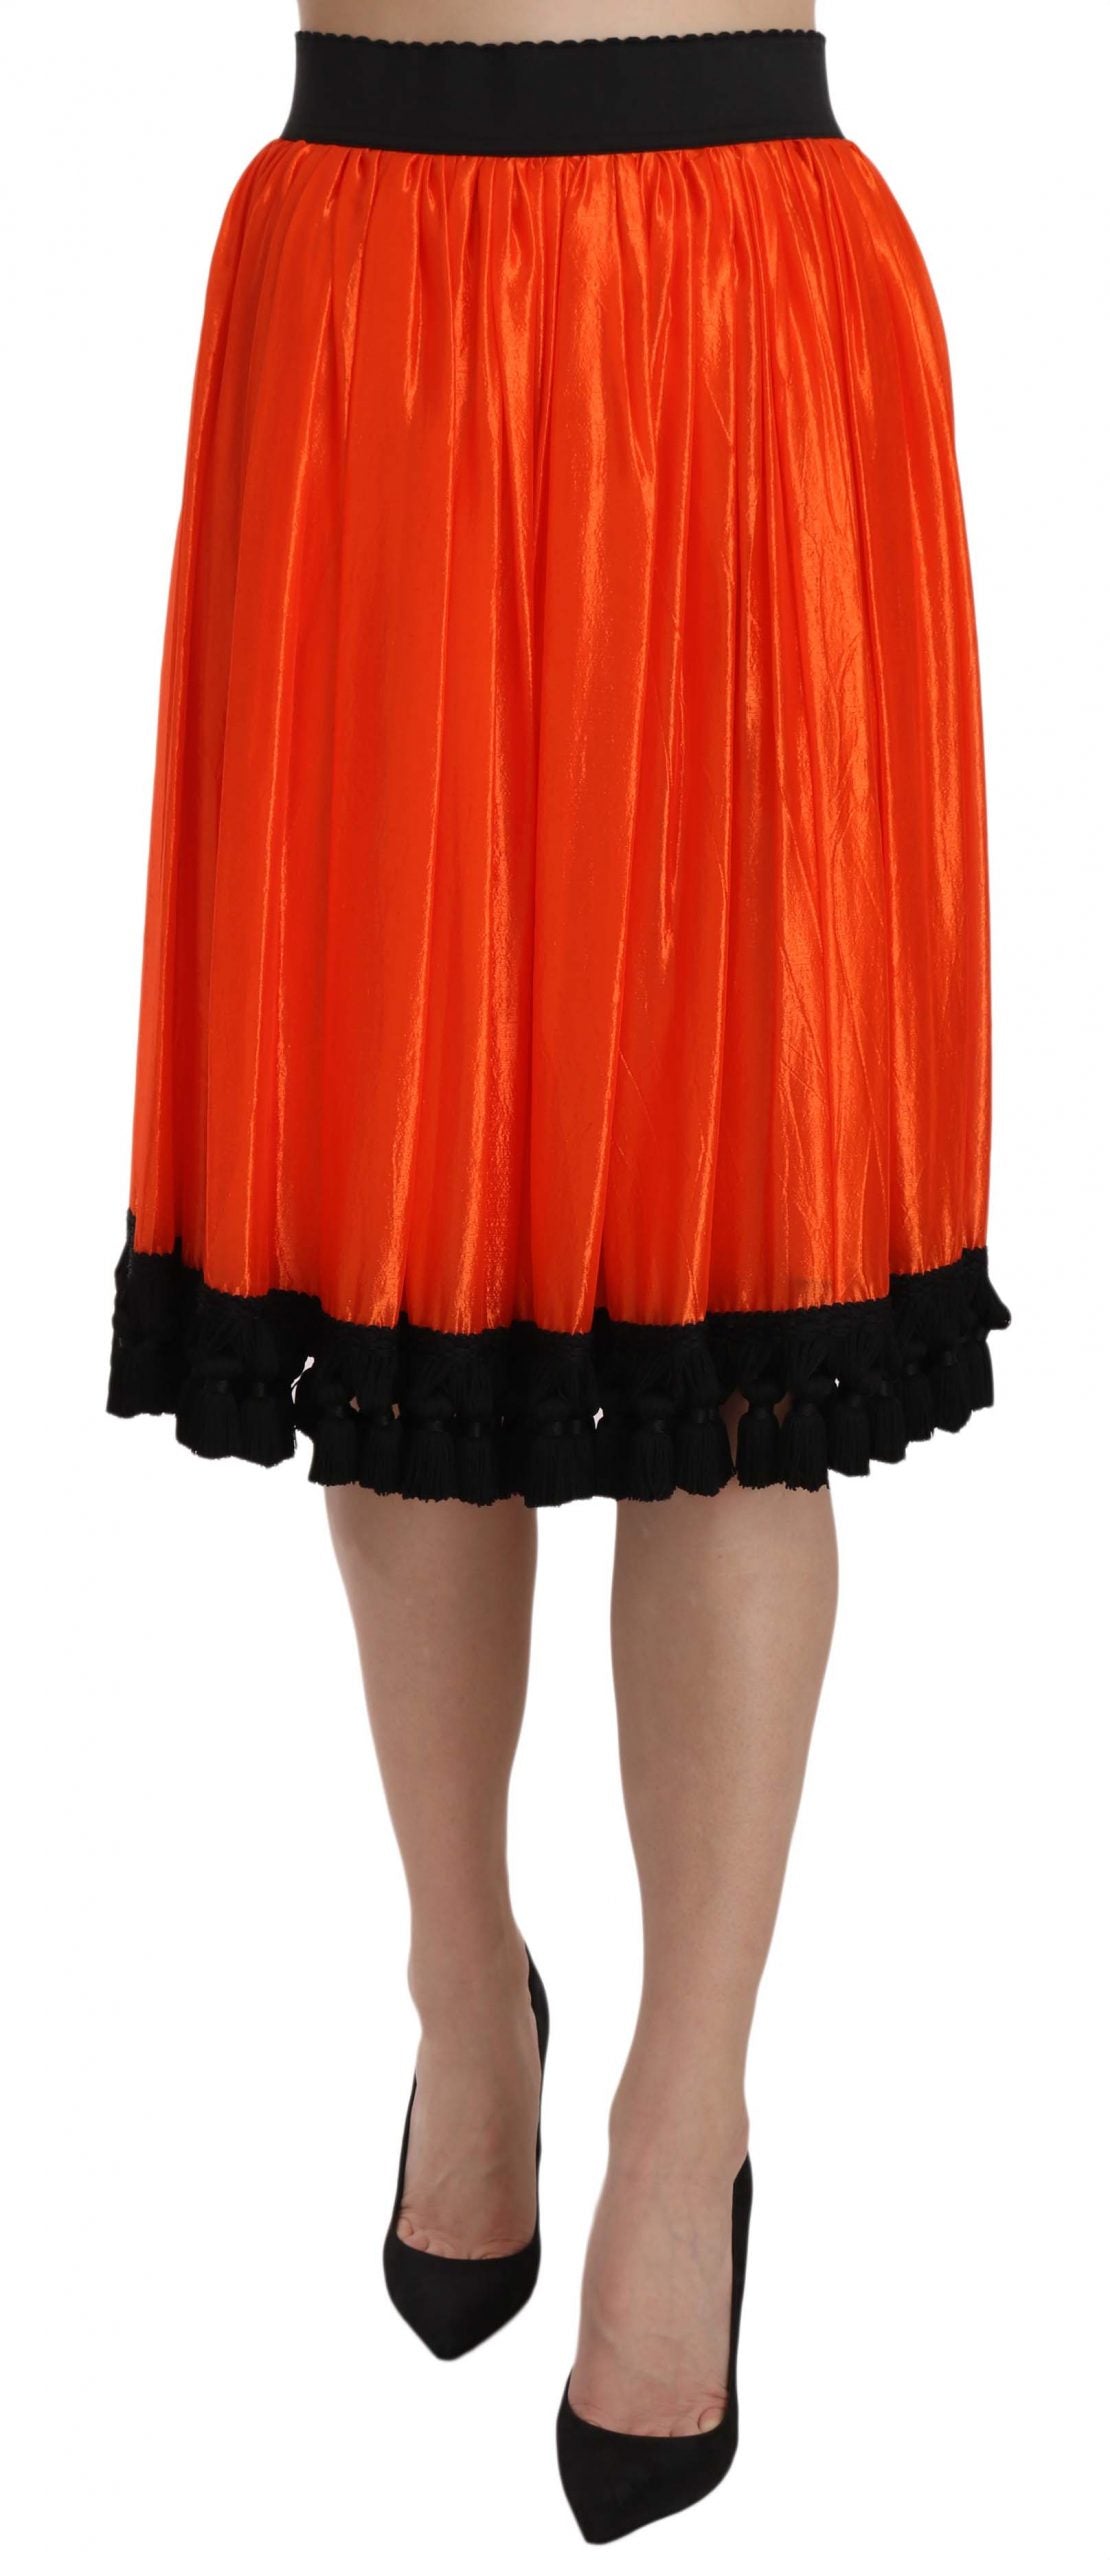 High-Waist Black & Orange Knee-Length Skirt